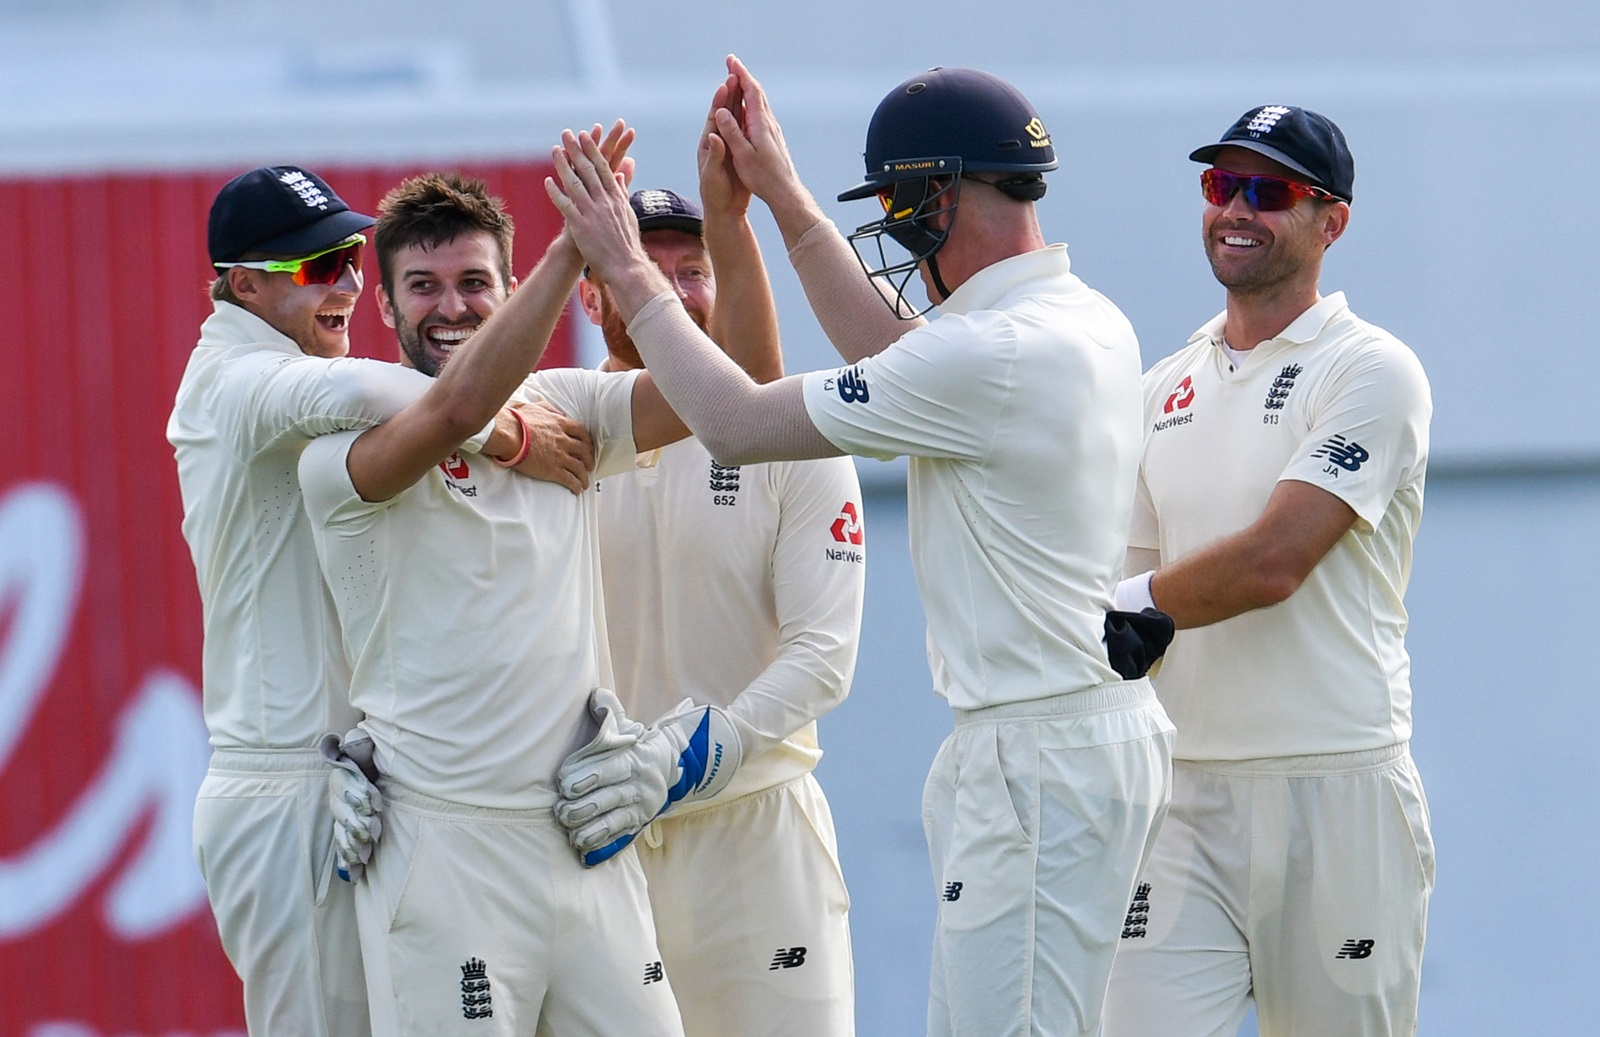 श्रीलंका दौरे से पहले इंग्लैंड को बड़ा झटका, प्रमुख गेंदबाज चोट की वजह से बाहर 1